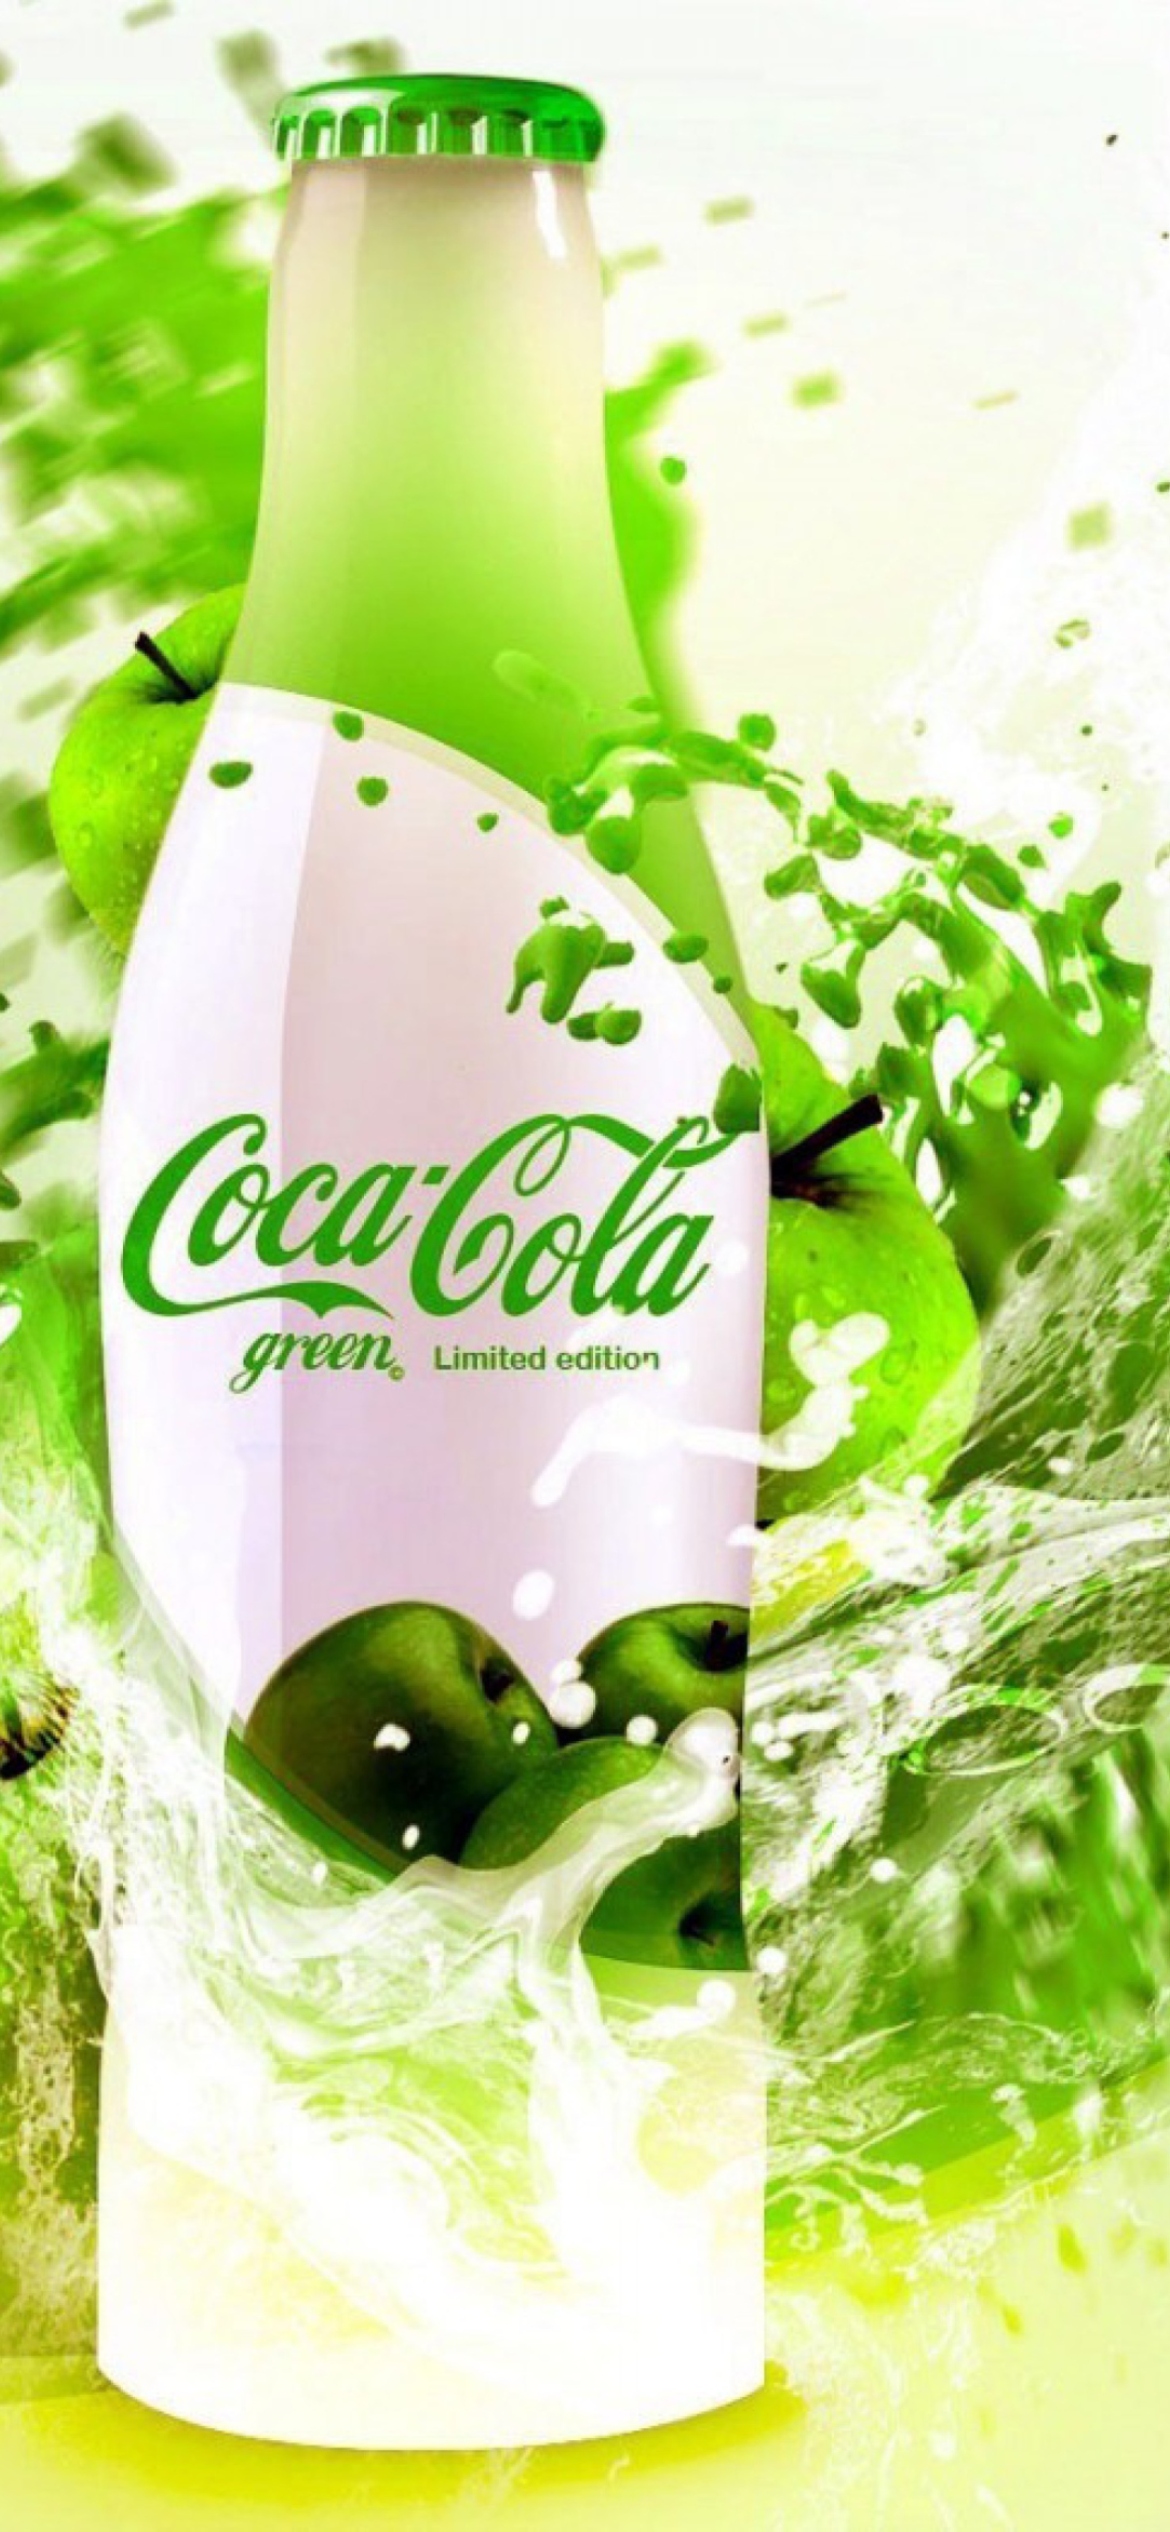 Coca Cola Apple Flavor screenshot #1 1170x2532